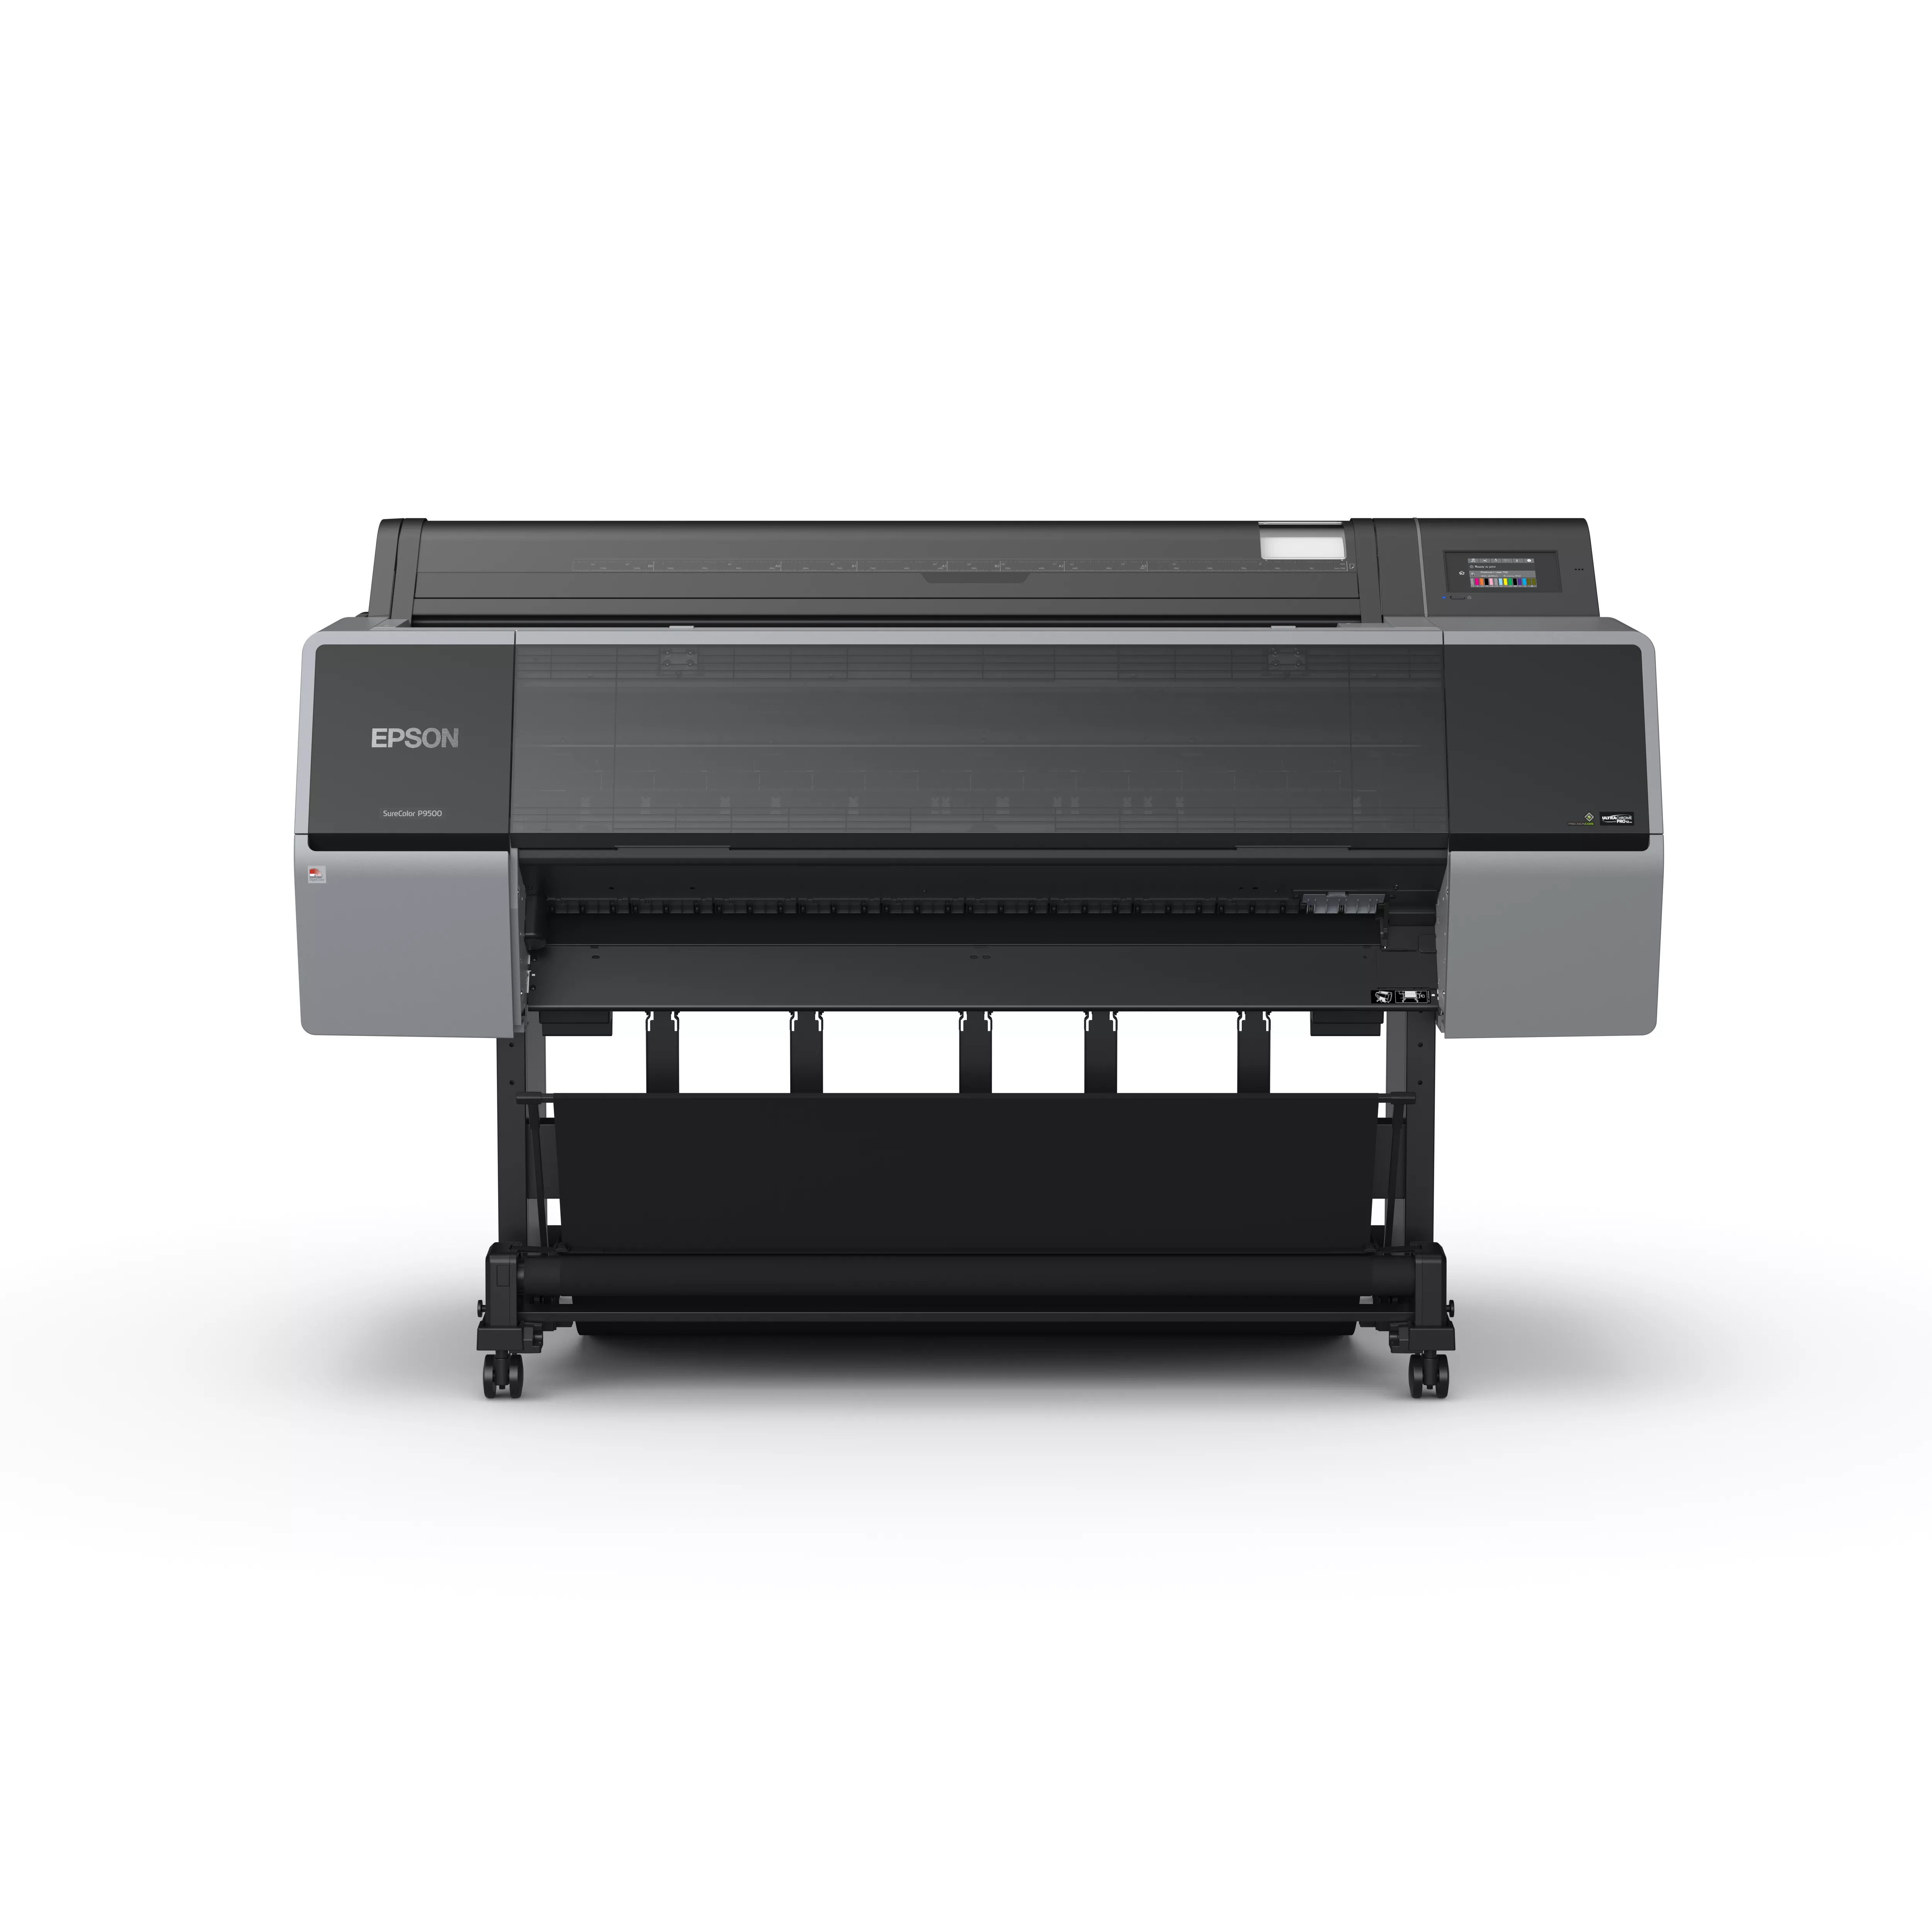 Achat EPSON SureColor SC-P9500 44p large-format printer colour et autres produits de la marque Epson